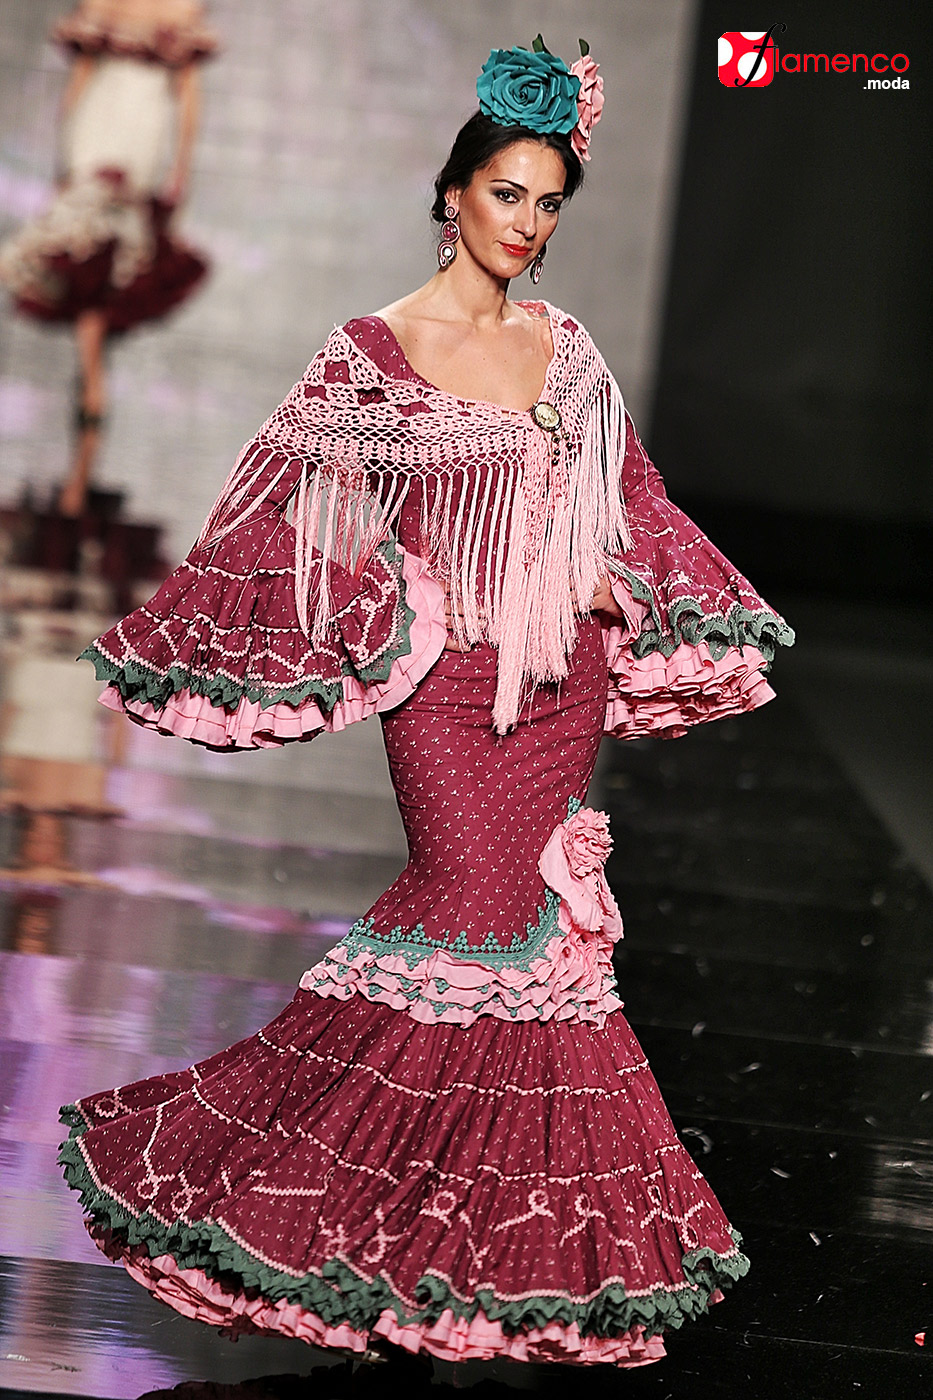 Margarita “Fusión” - Simof 2015 | Moda Flamenco.moda